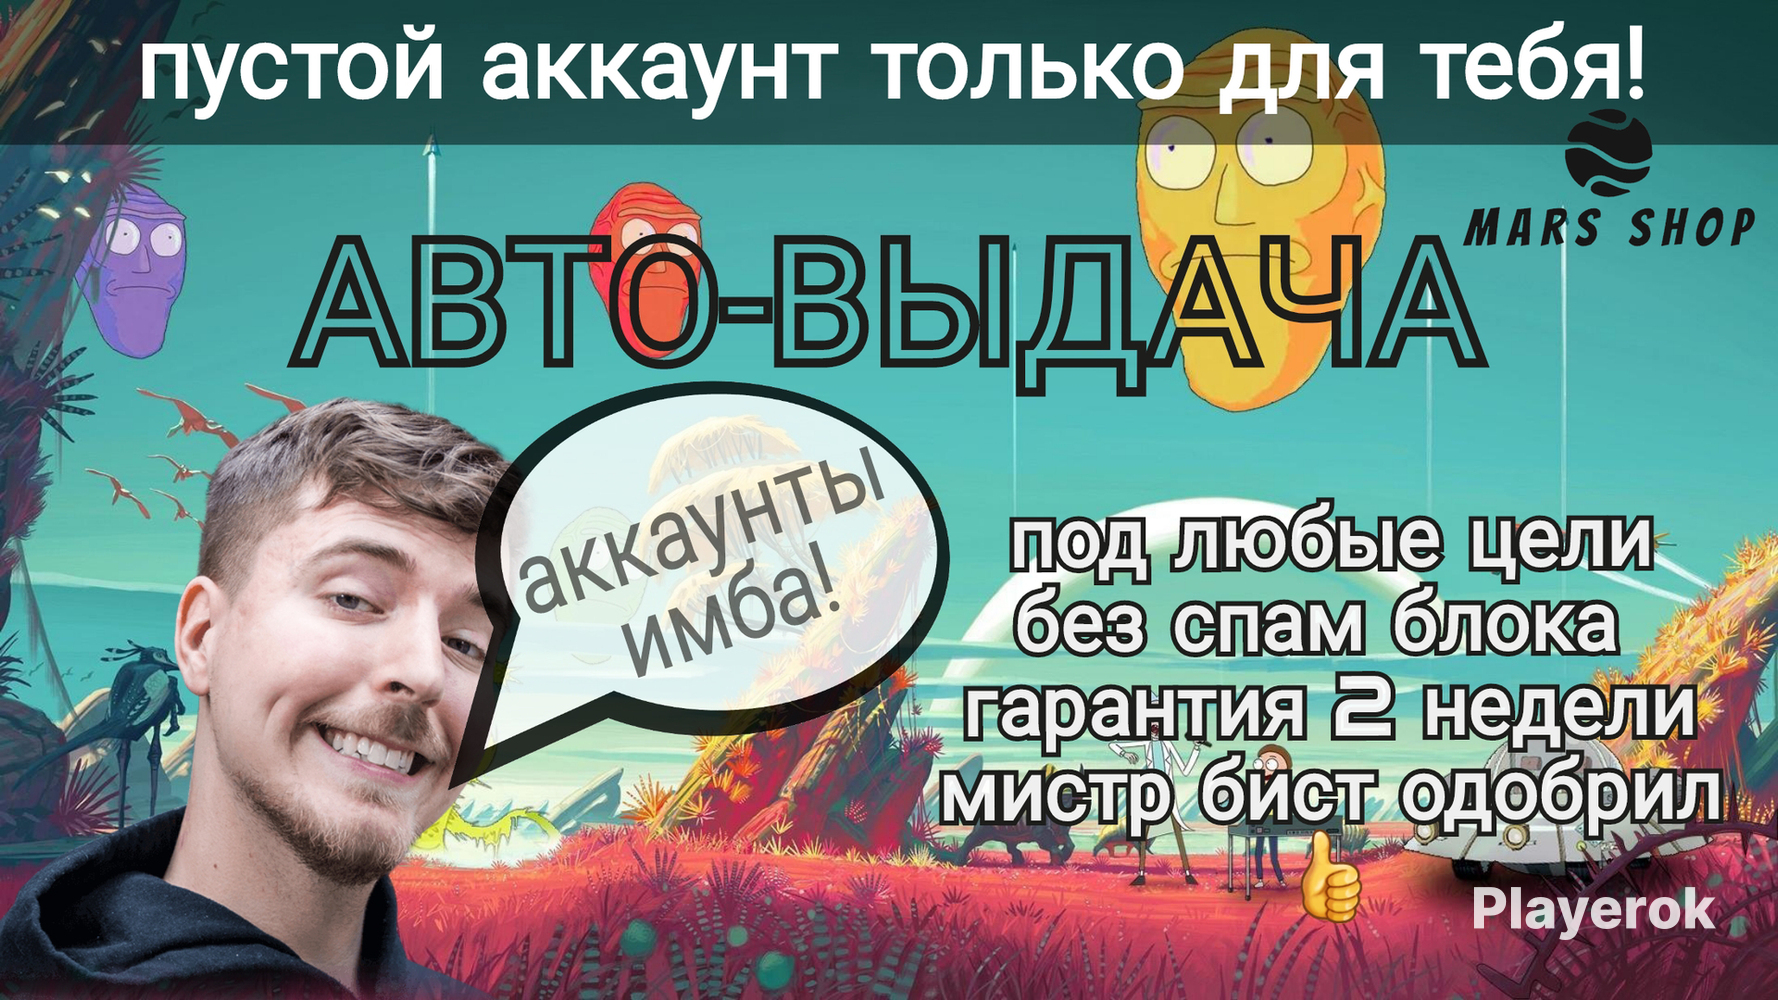 Аккаунт телеграмм украина купить фото 97